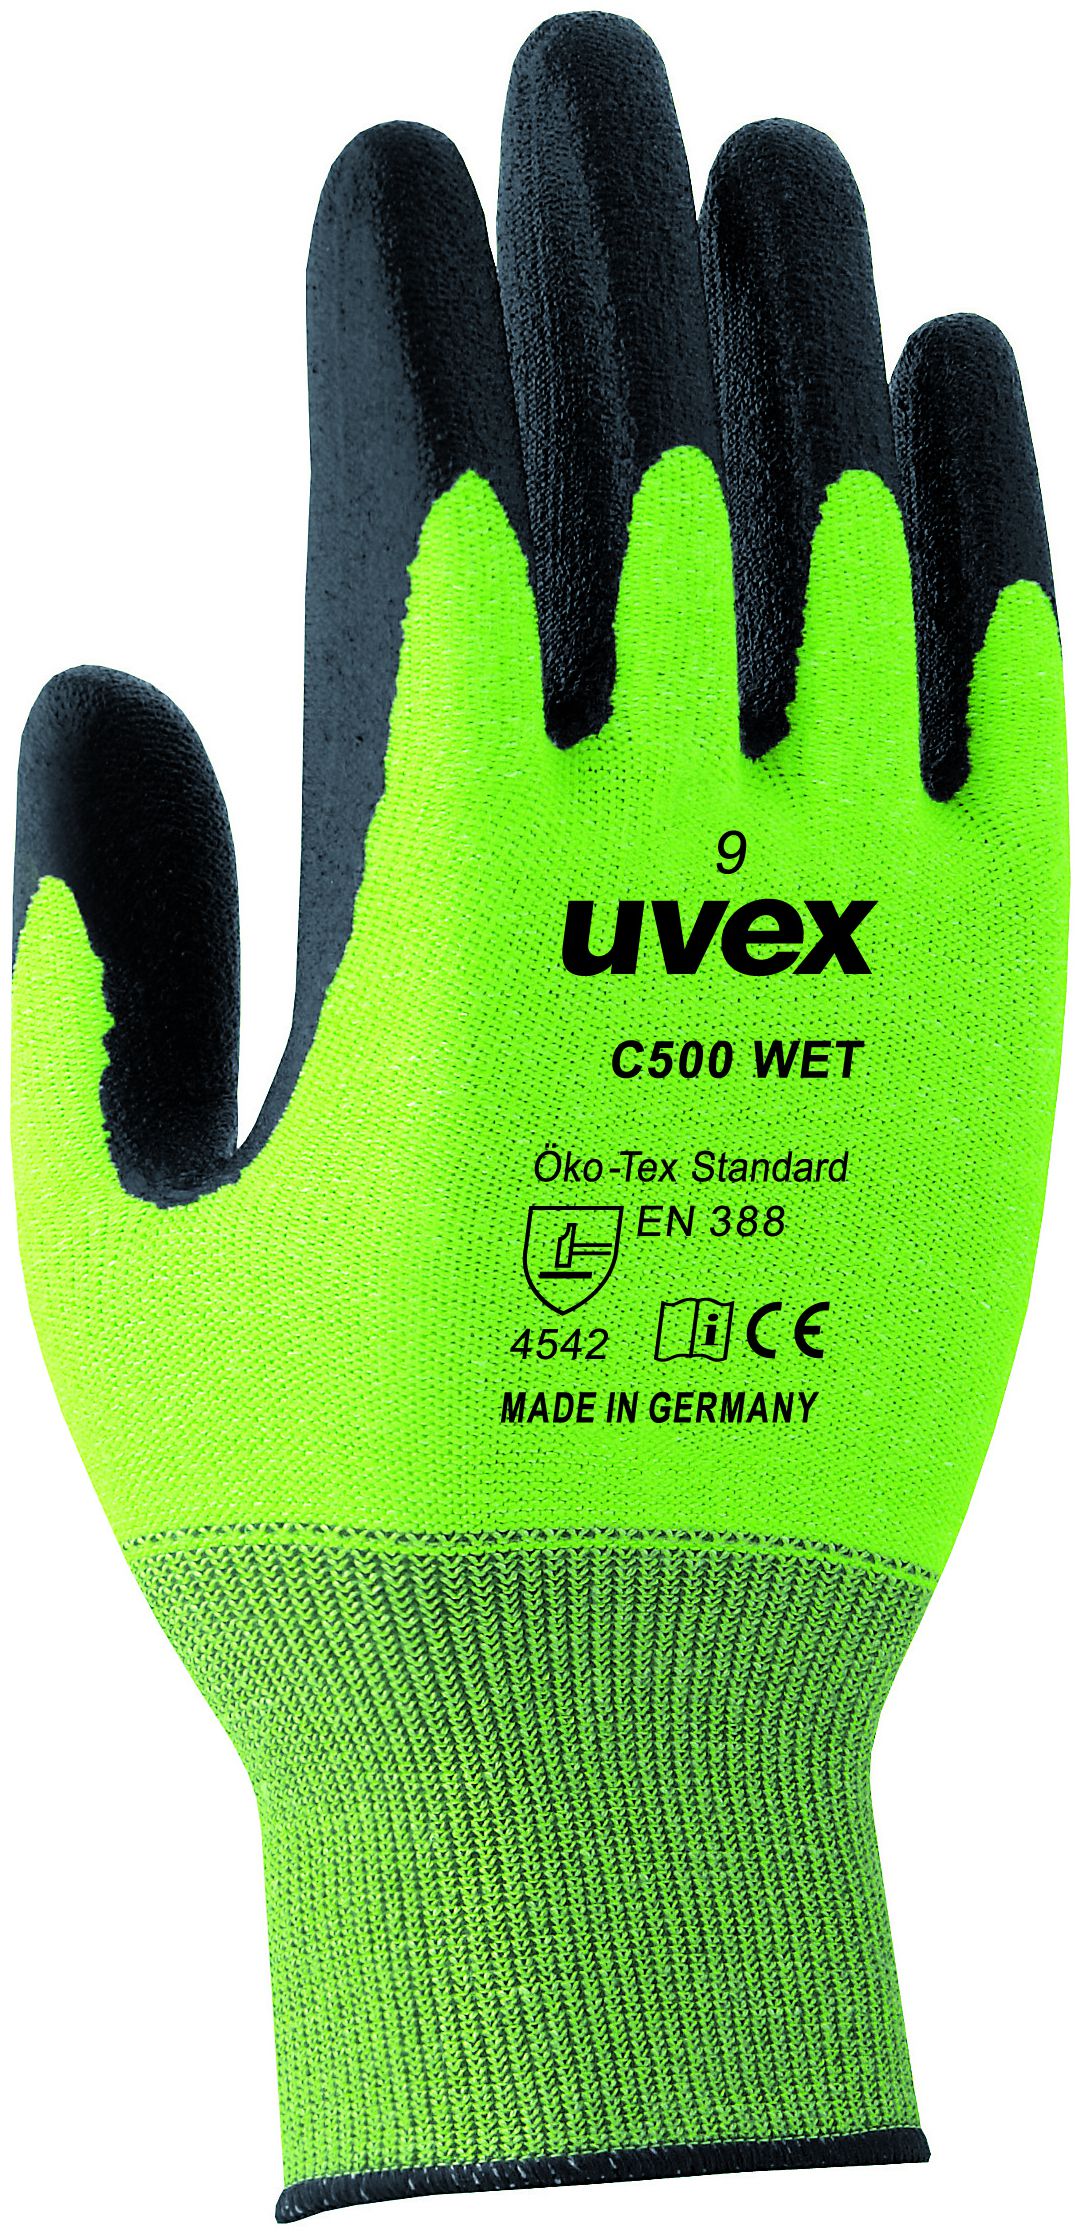 UVEX Schnittschutzhandschuh, C500 WET Gr.9, lime/anthrazit, sehr hoher Schutz - Arbeitsschutz